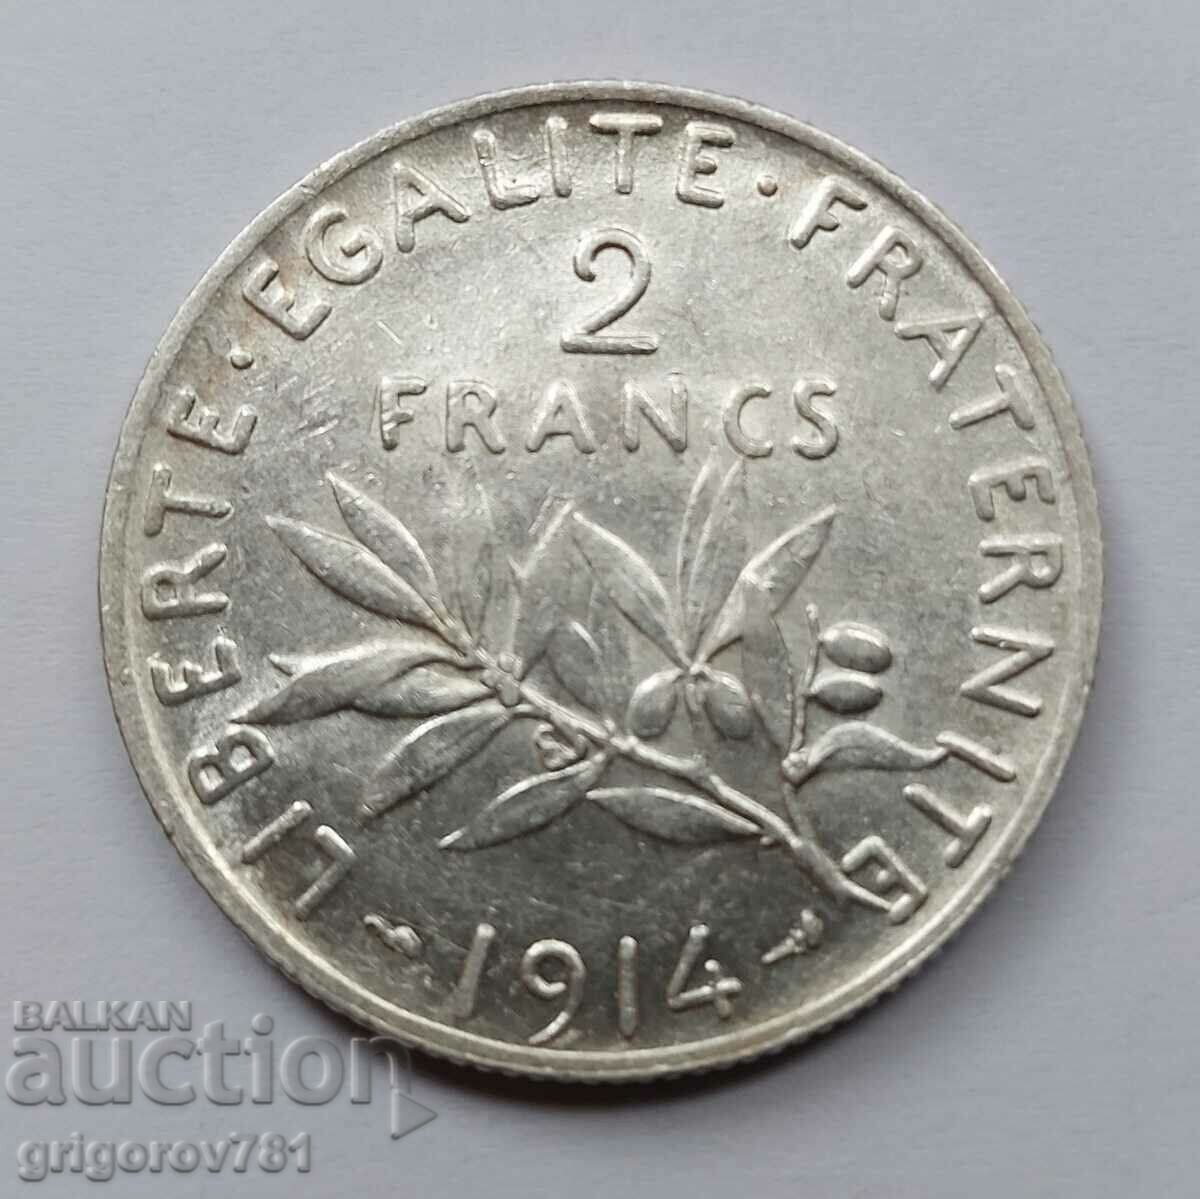 2 Franci Argint Franta 1914 - Moneda de argint #144